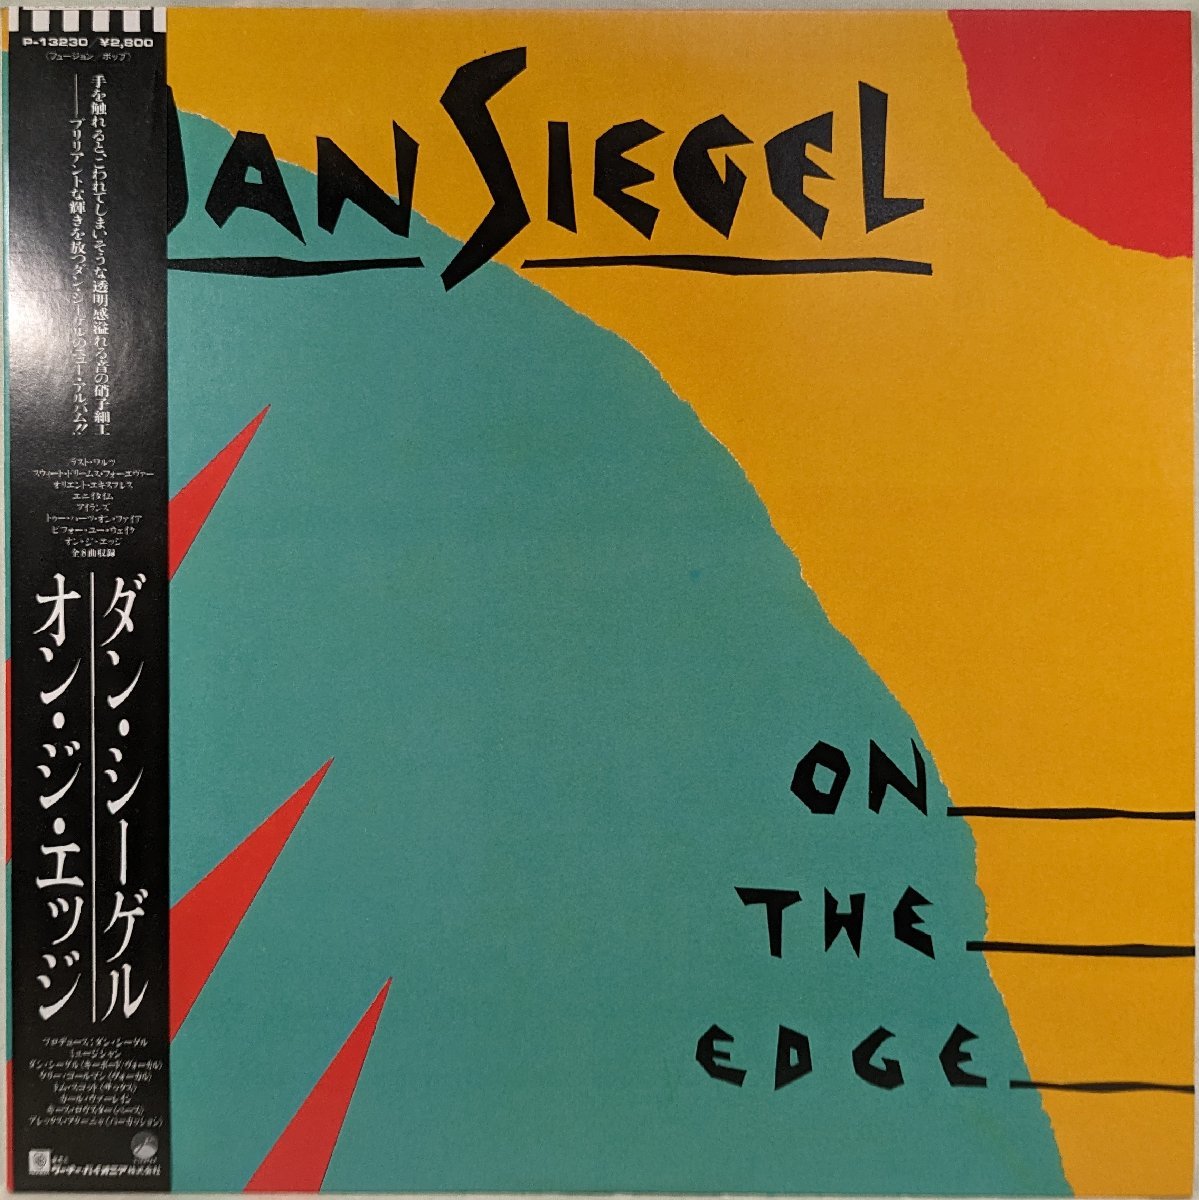 帯付★中古LP「on the edge / オン・ザ・エッジ」Dan Siegel / ダン・シーゲル_画像1